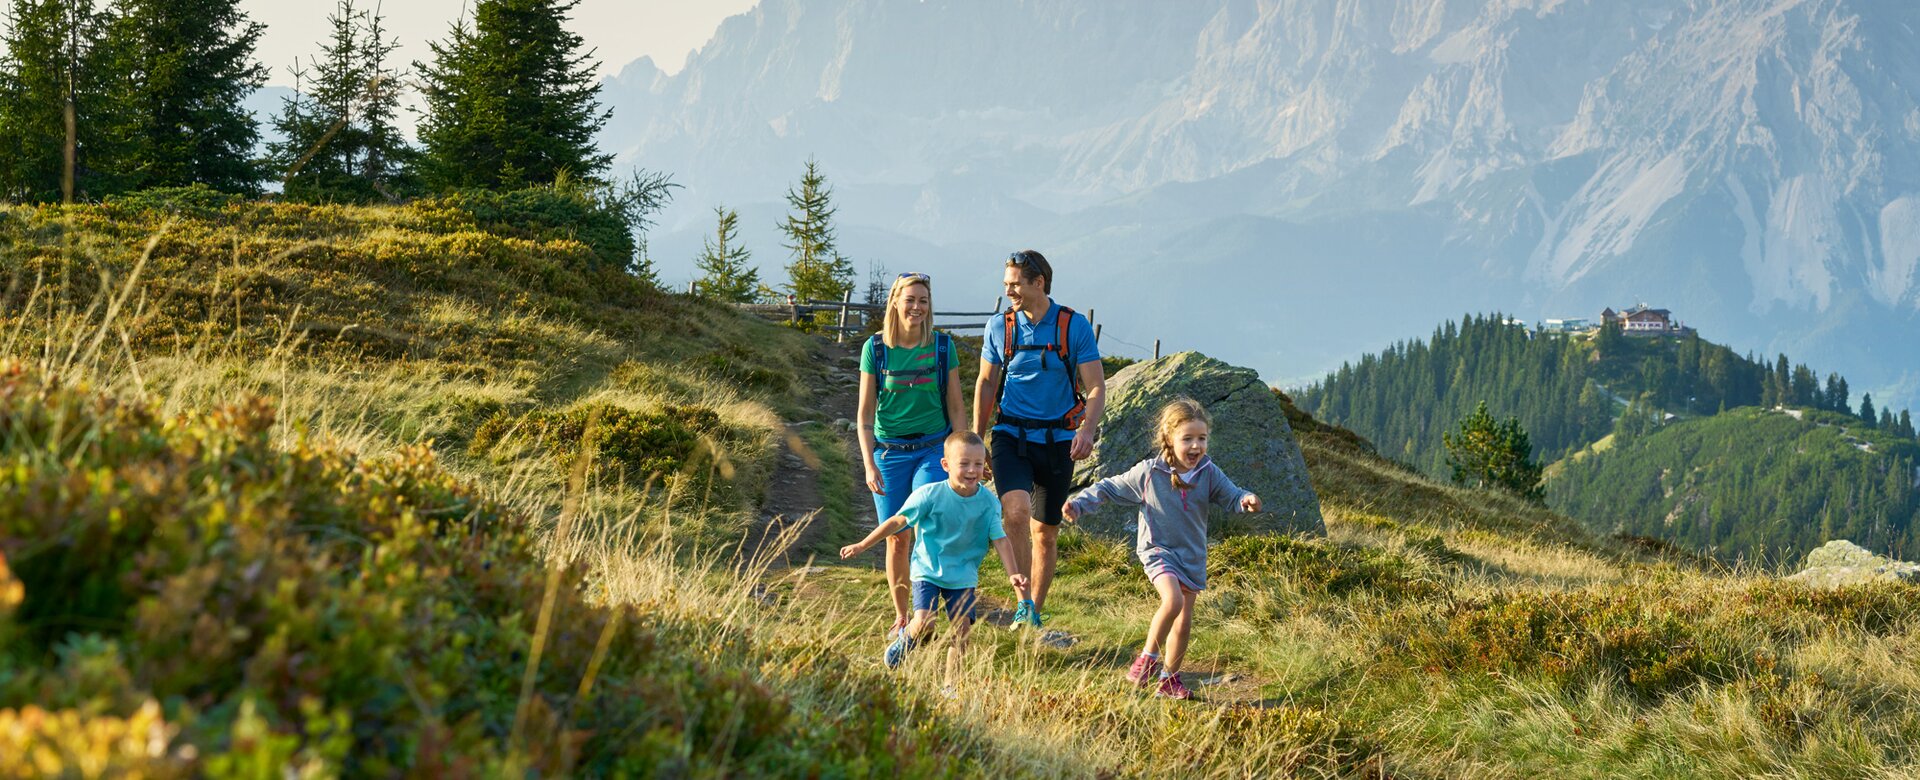 Wanderurlaub mit der ganzen Familie in Schladming-Dachstein im Sommer in Ski amadé | © Schladming-Dachstein Tourismus, Peter Burgstaller